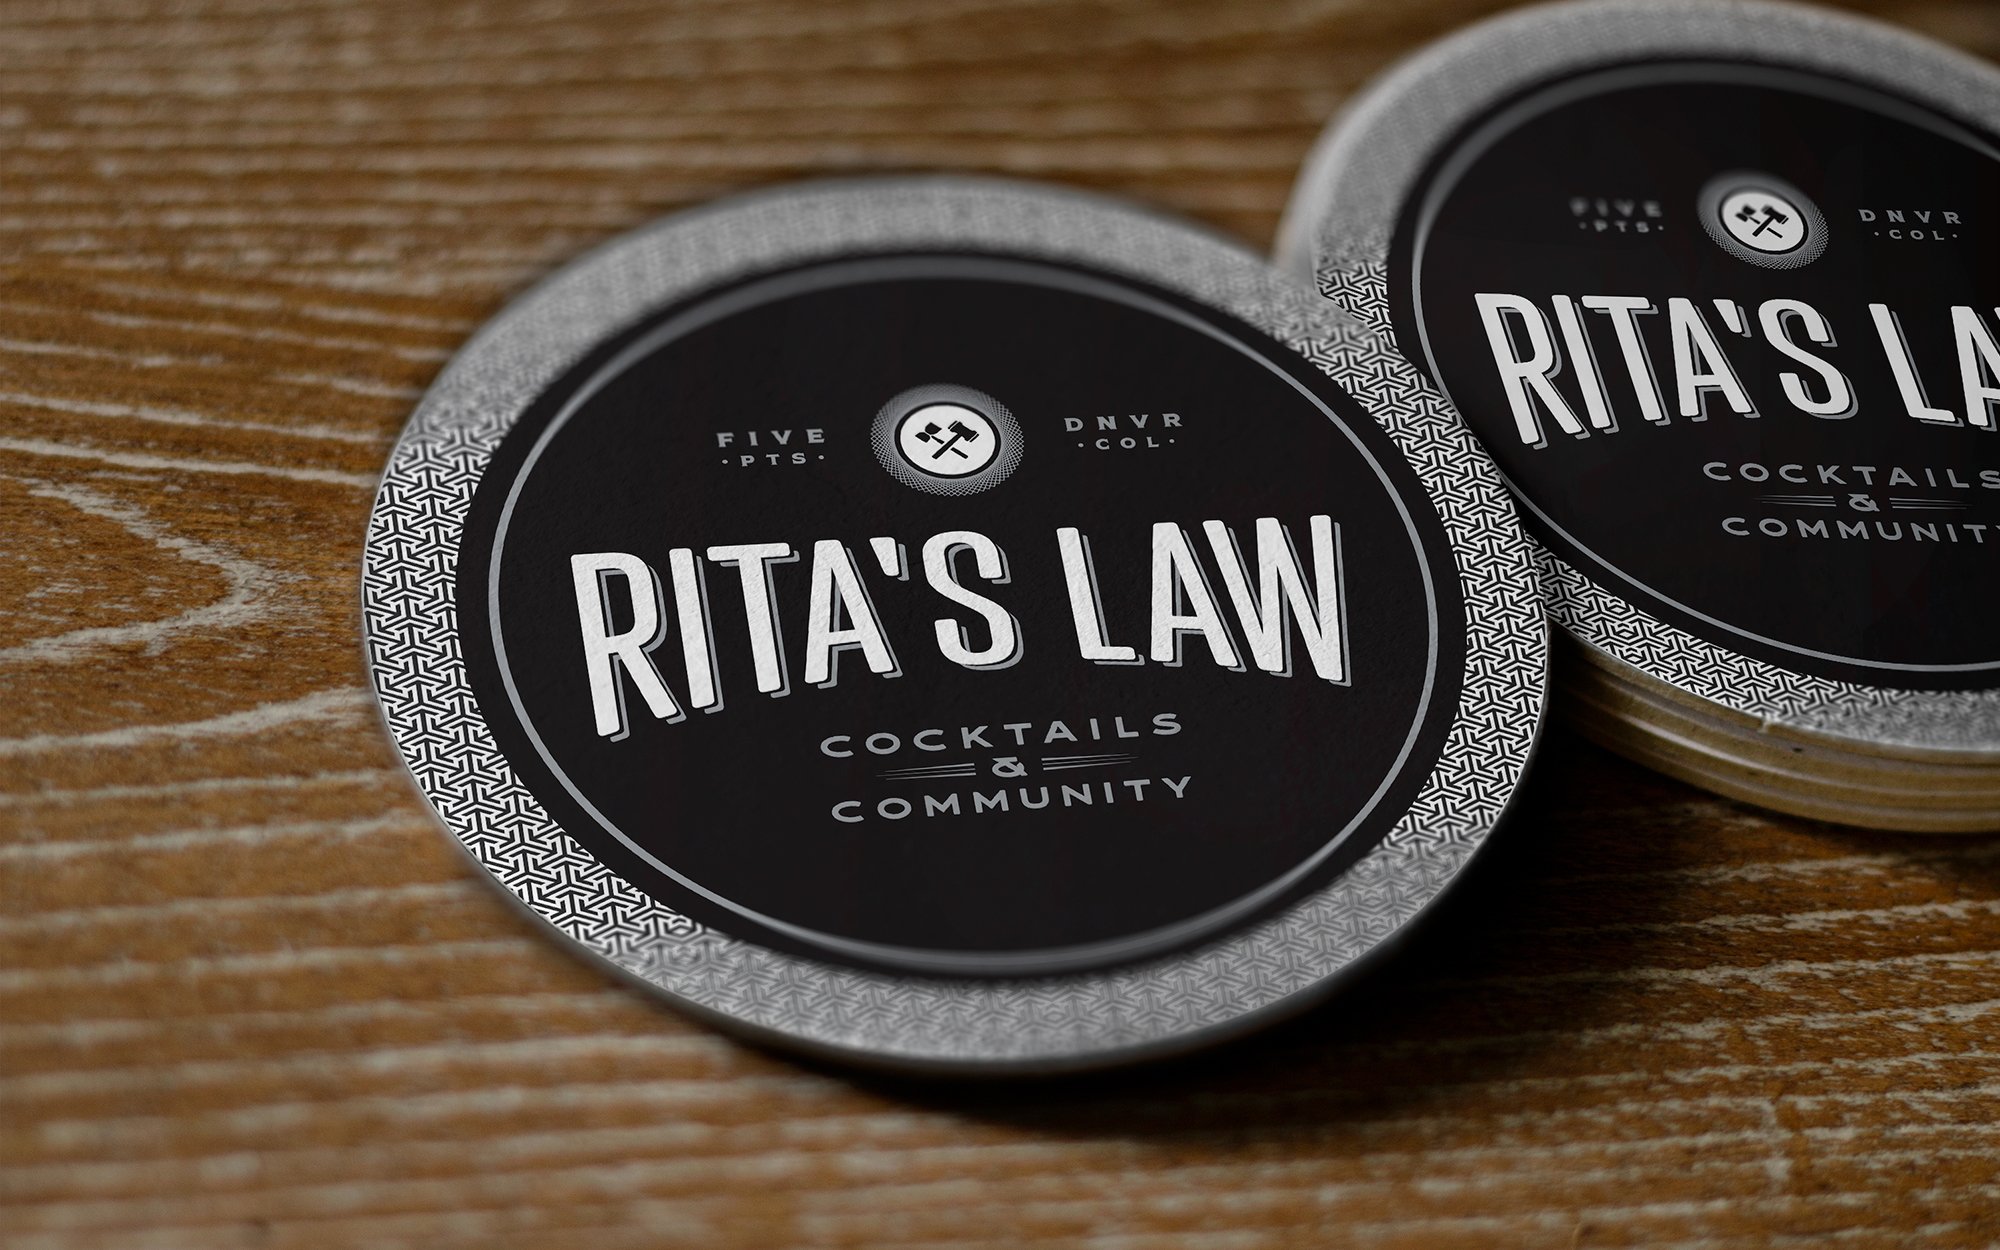 RitasLaw_Coasters.jpg